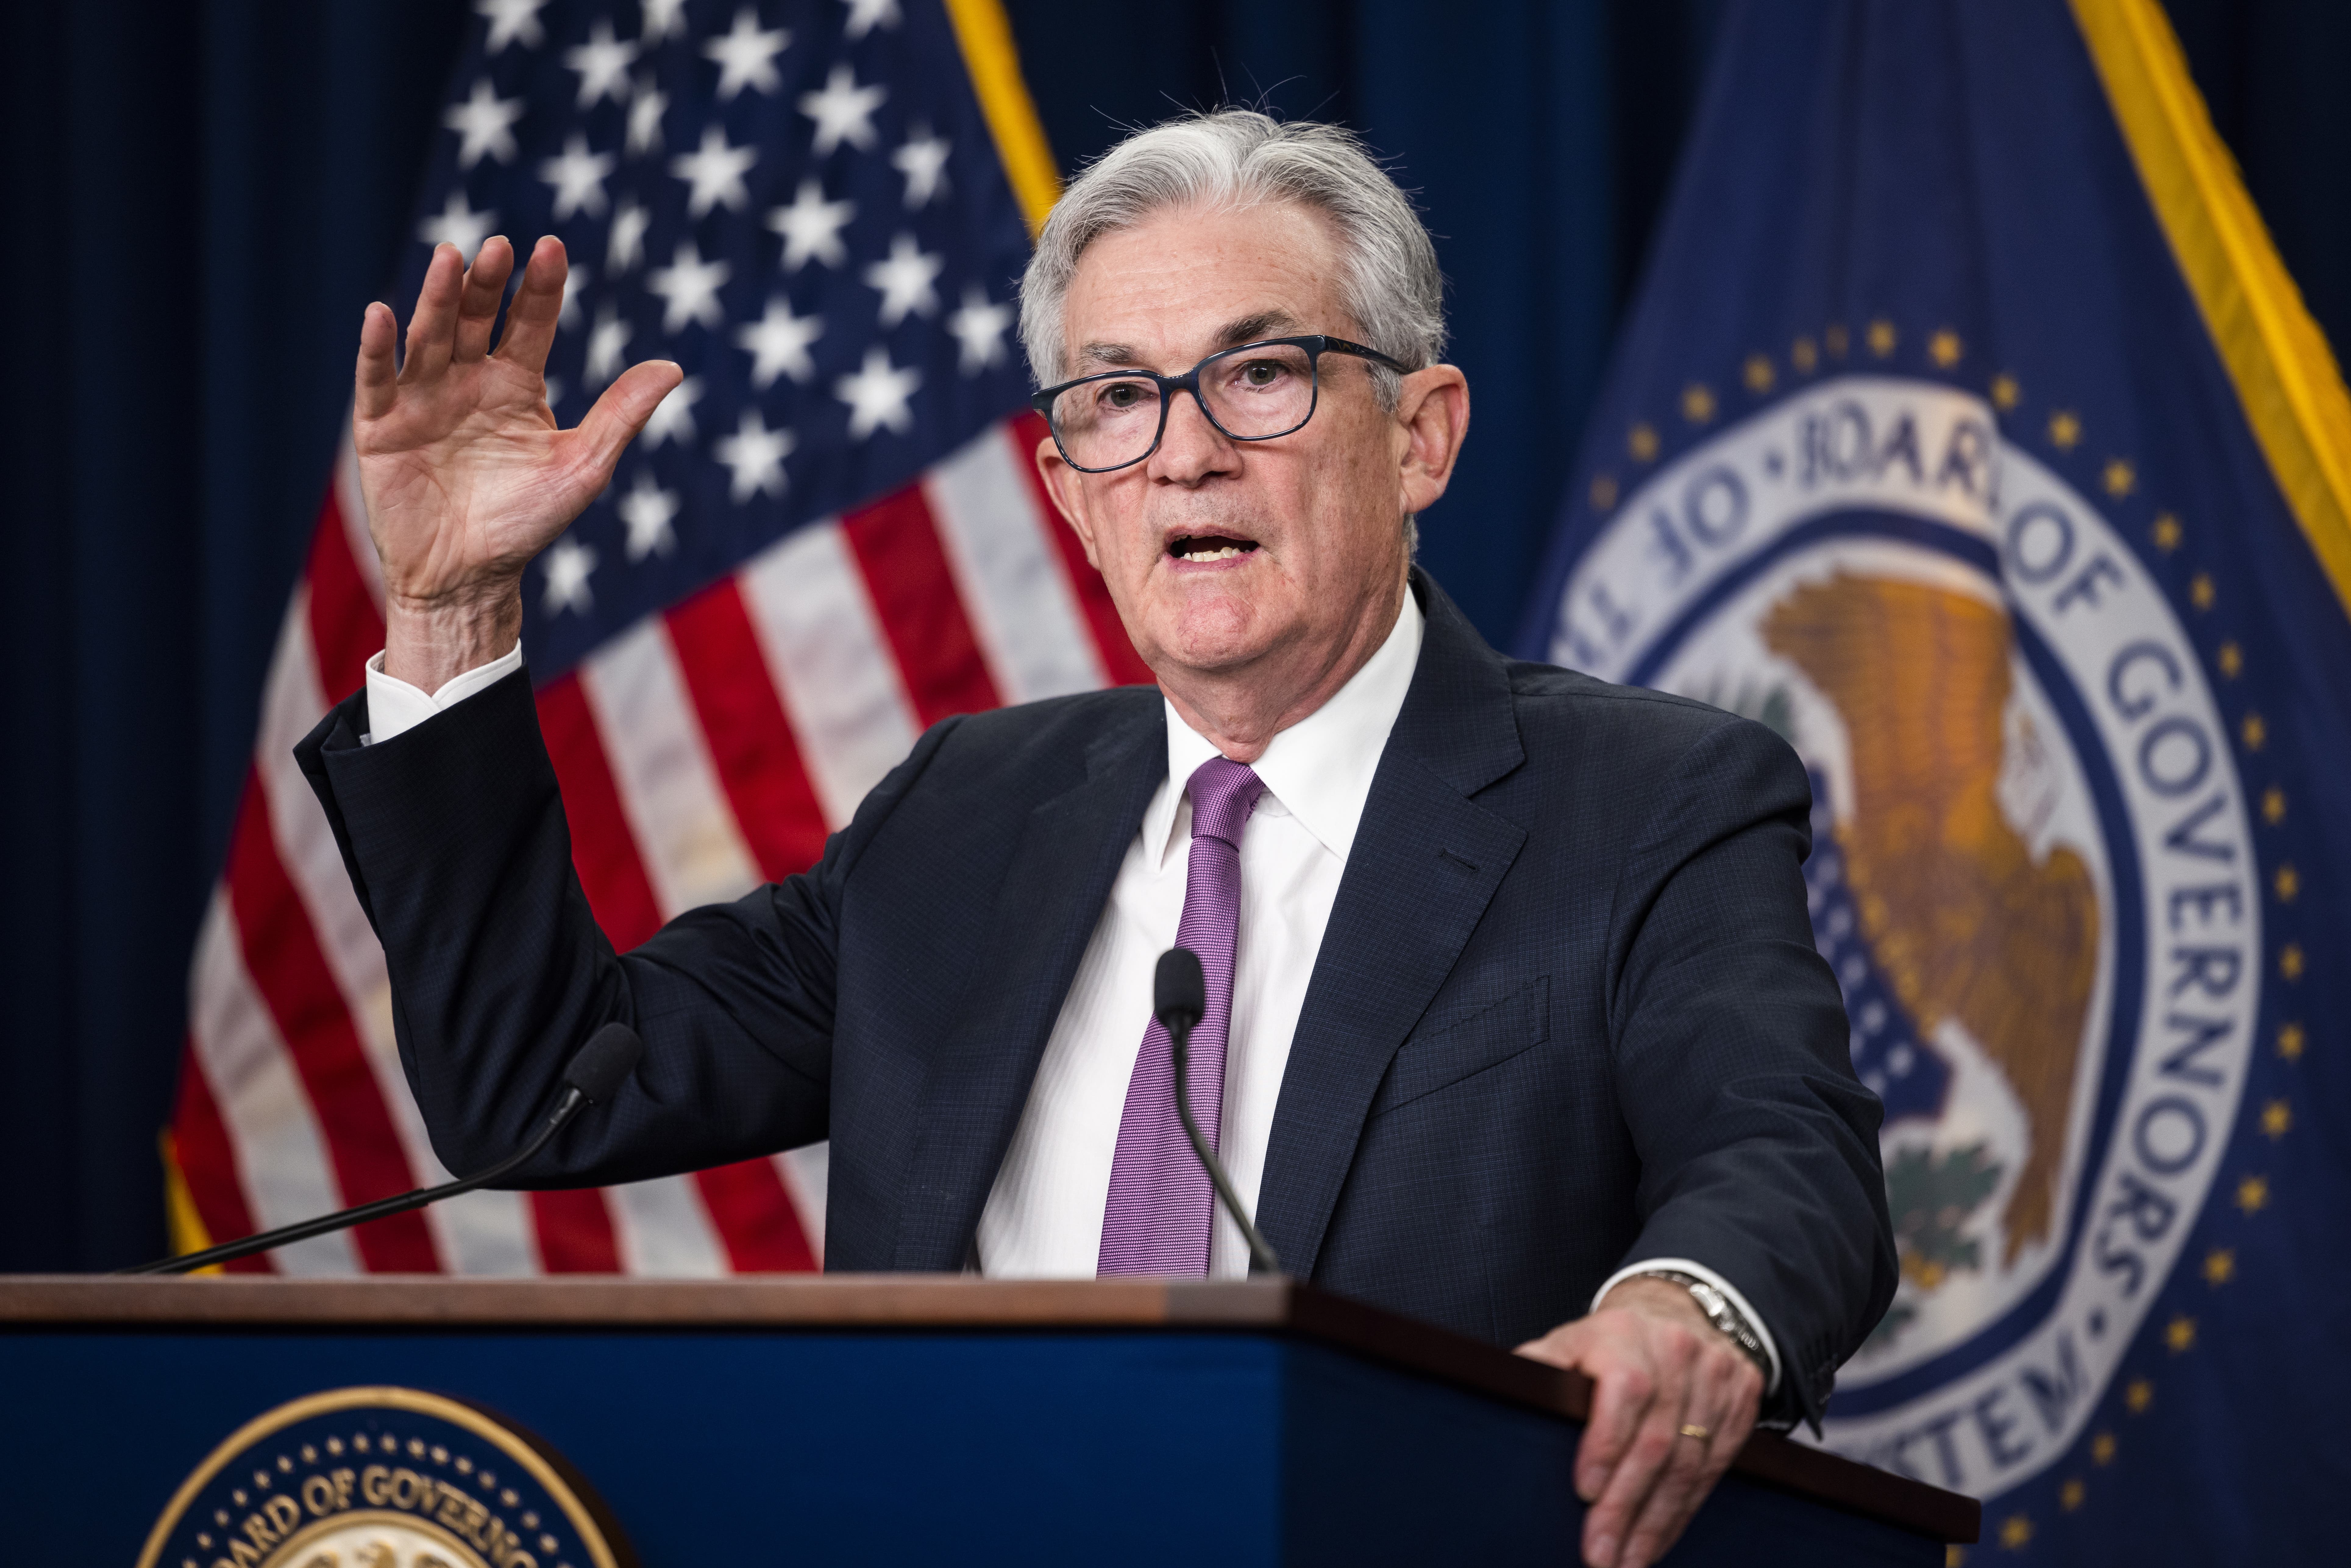 La Fed de EEUU aumenta tasas en lucha contra inflación